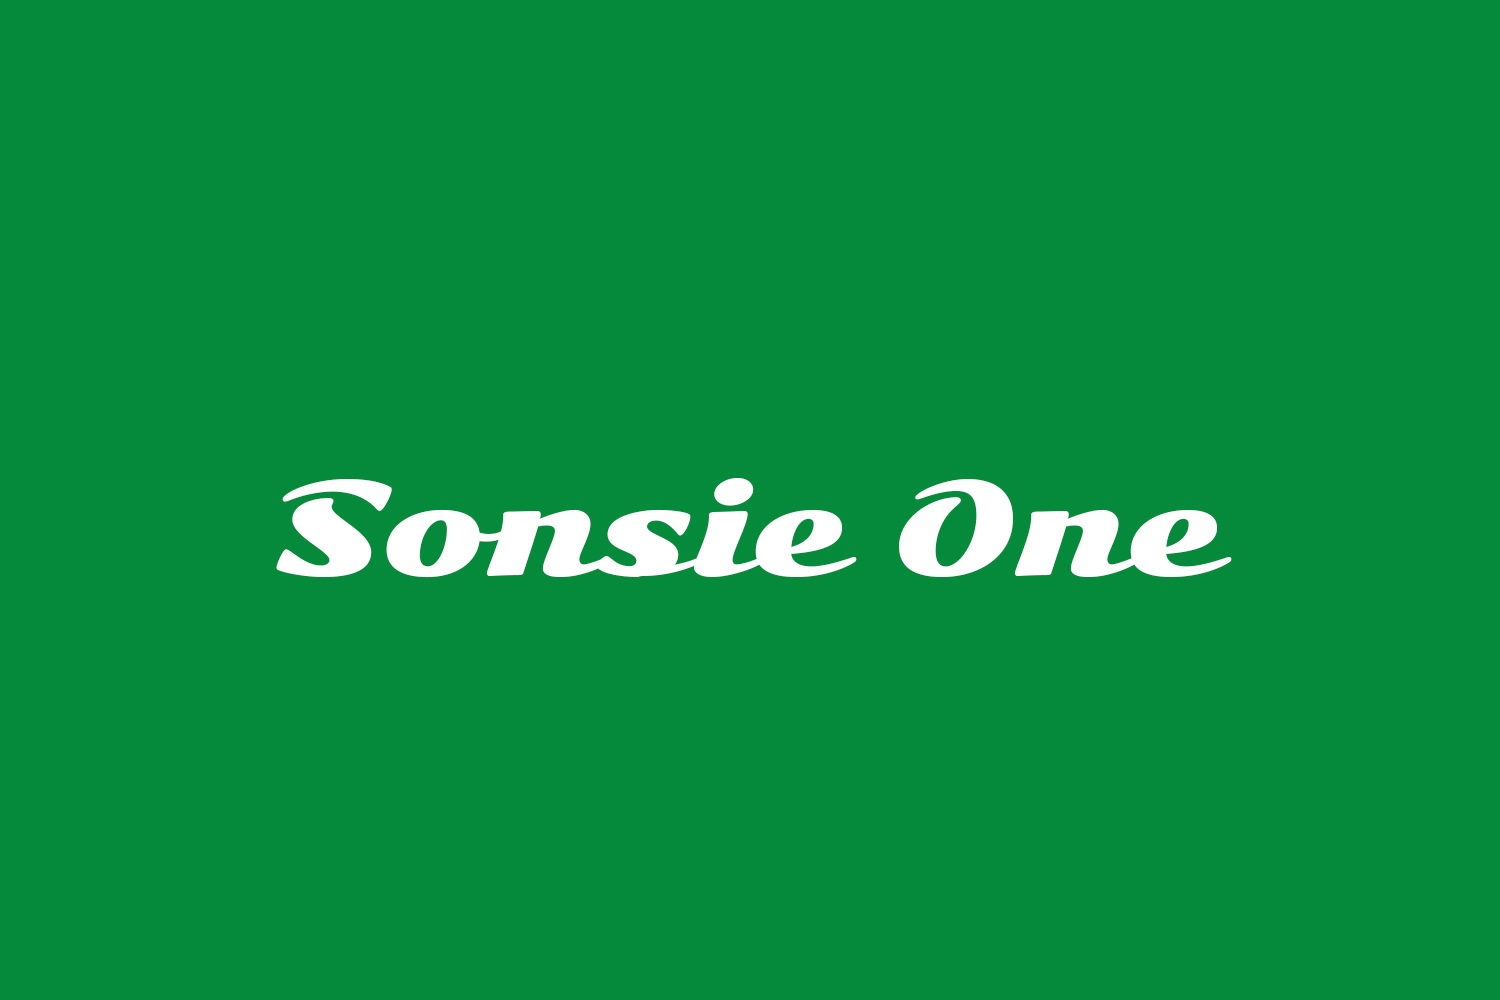 Sonsie One